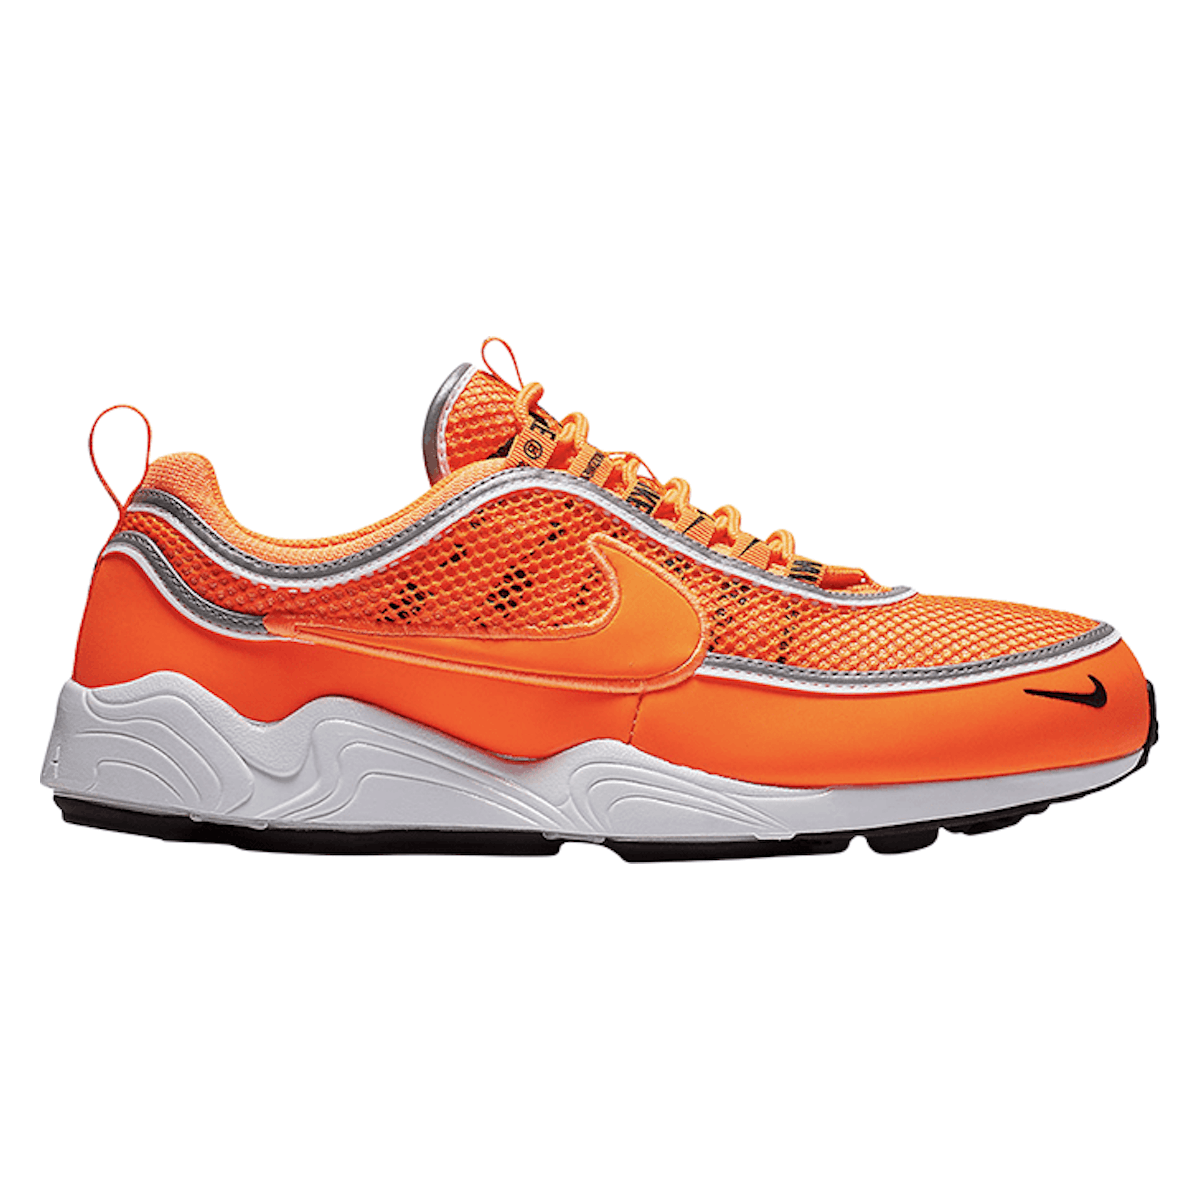 Nike Air Zoom Spiridon 16 SE "Total Orange"